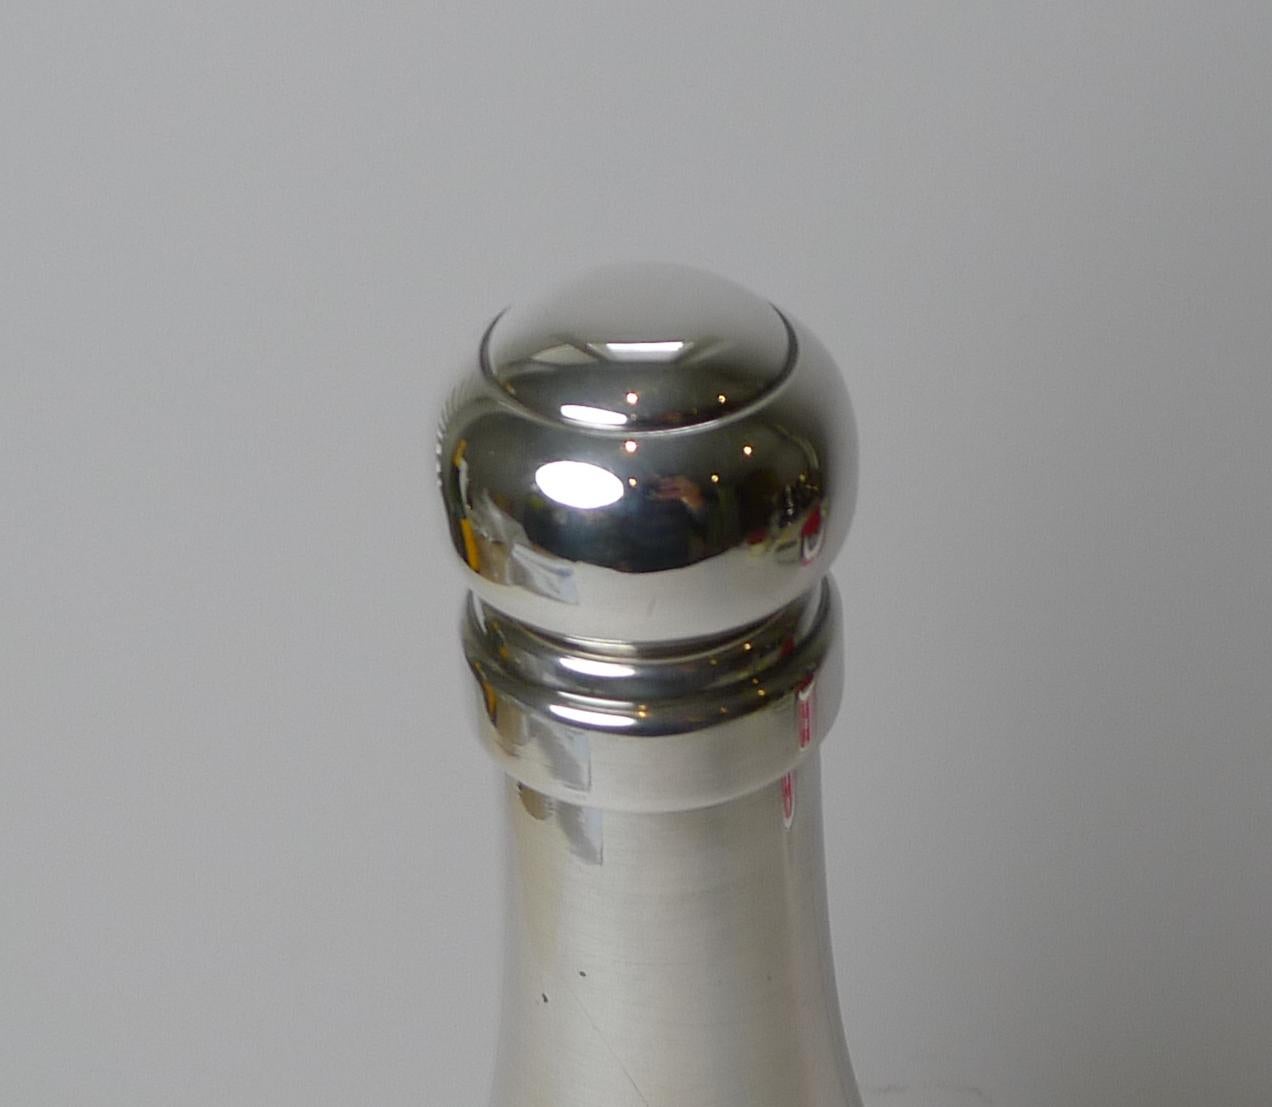 Ein seltener französischer Rezept-Cocktailshaker aus Silberblech in Form einer Champagnerflasche. Was dieses Exemplar so besonders und sammelwürdig macht, ist die eingravierte Halterung auf der Vorderseite, auf der sieben Cocktailrezepte mit